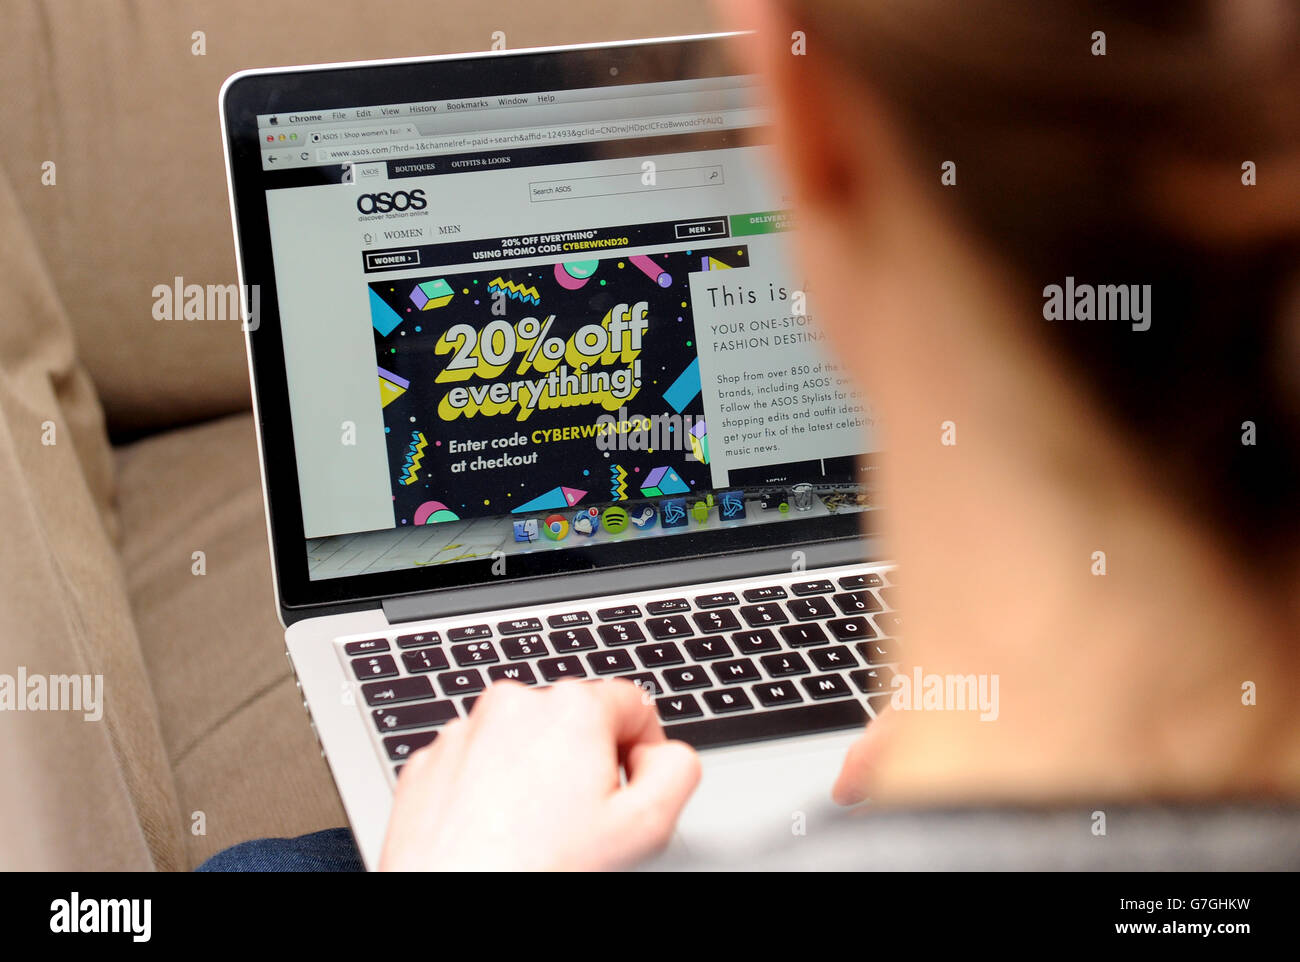 Online-Bestand Für Den Einzelhandel. Eine Frau nutzt einen Laptop, um die Asos-Website zu durchsuchen Stockfoto